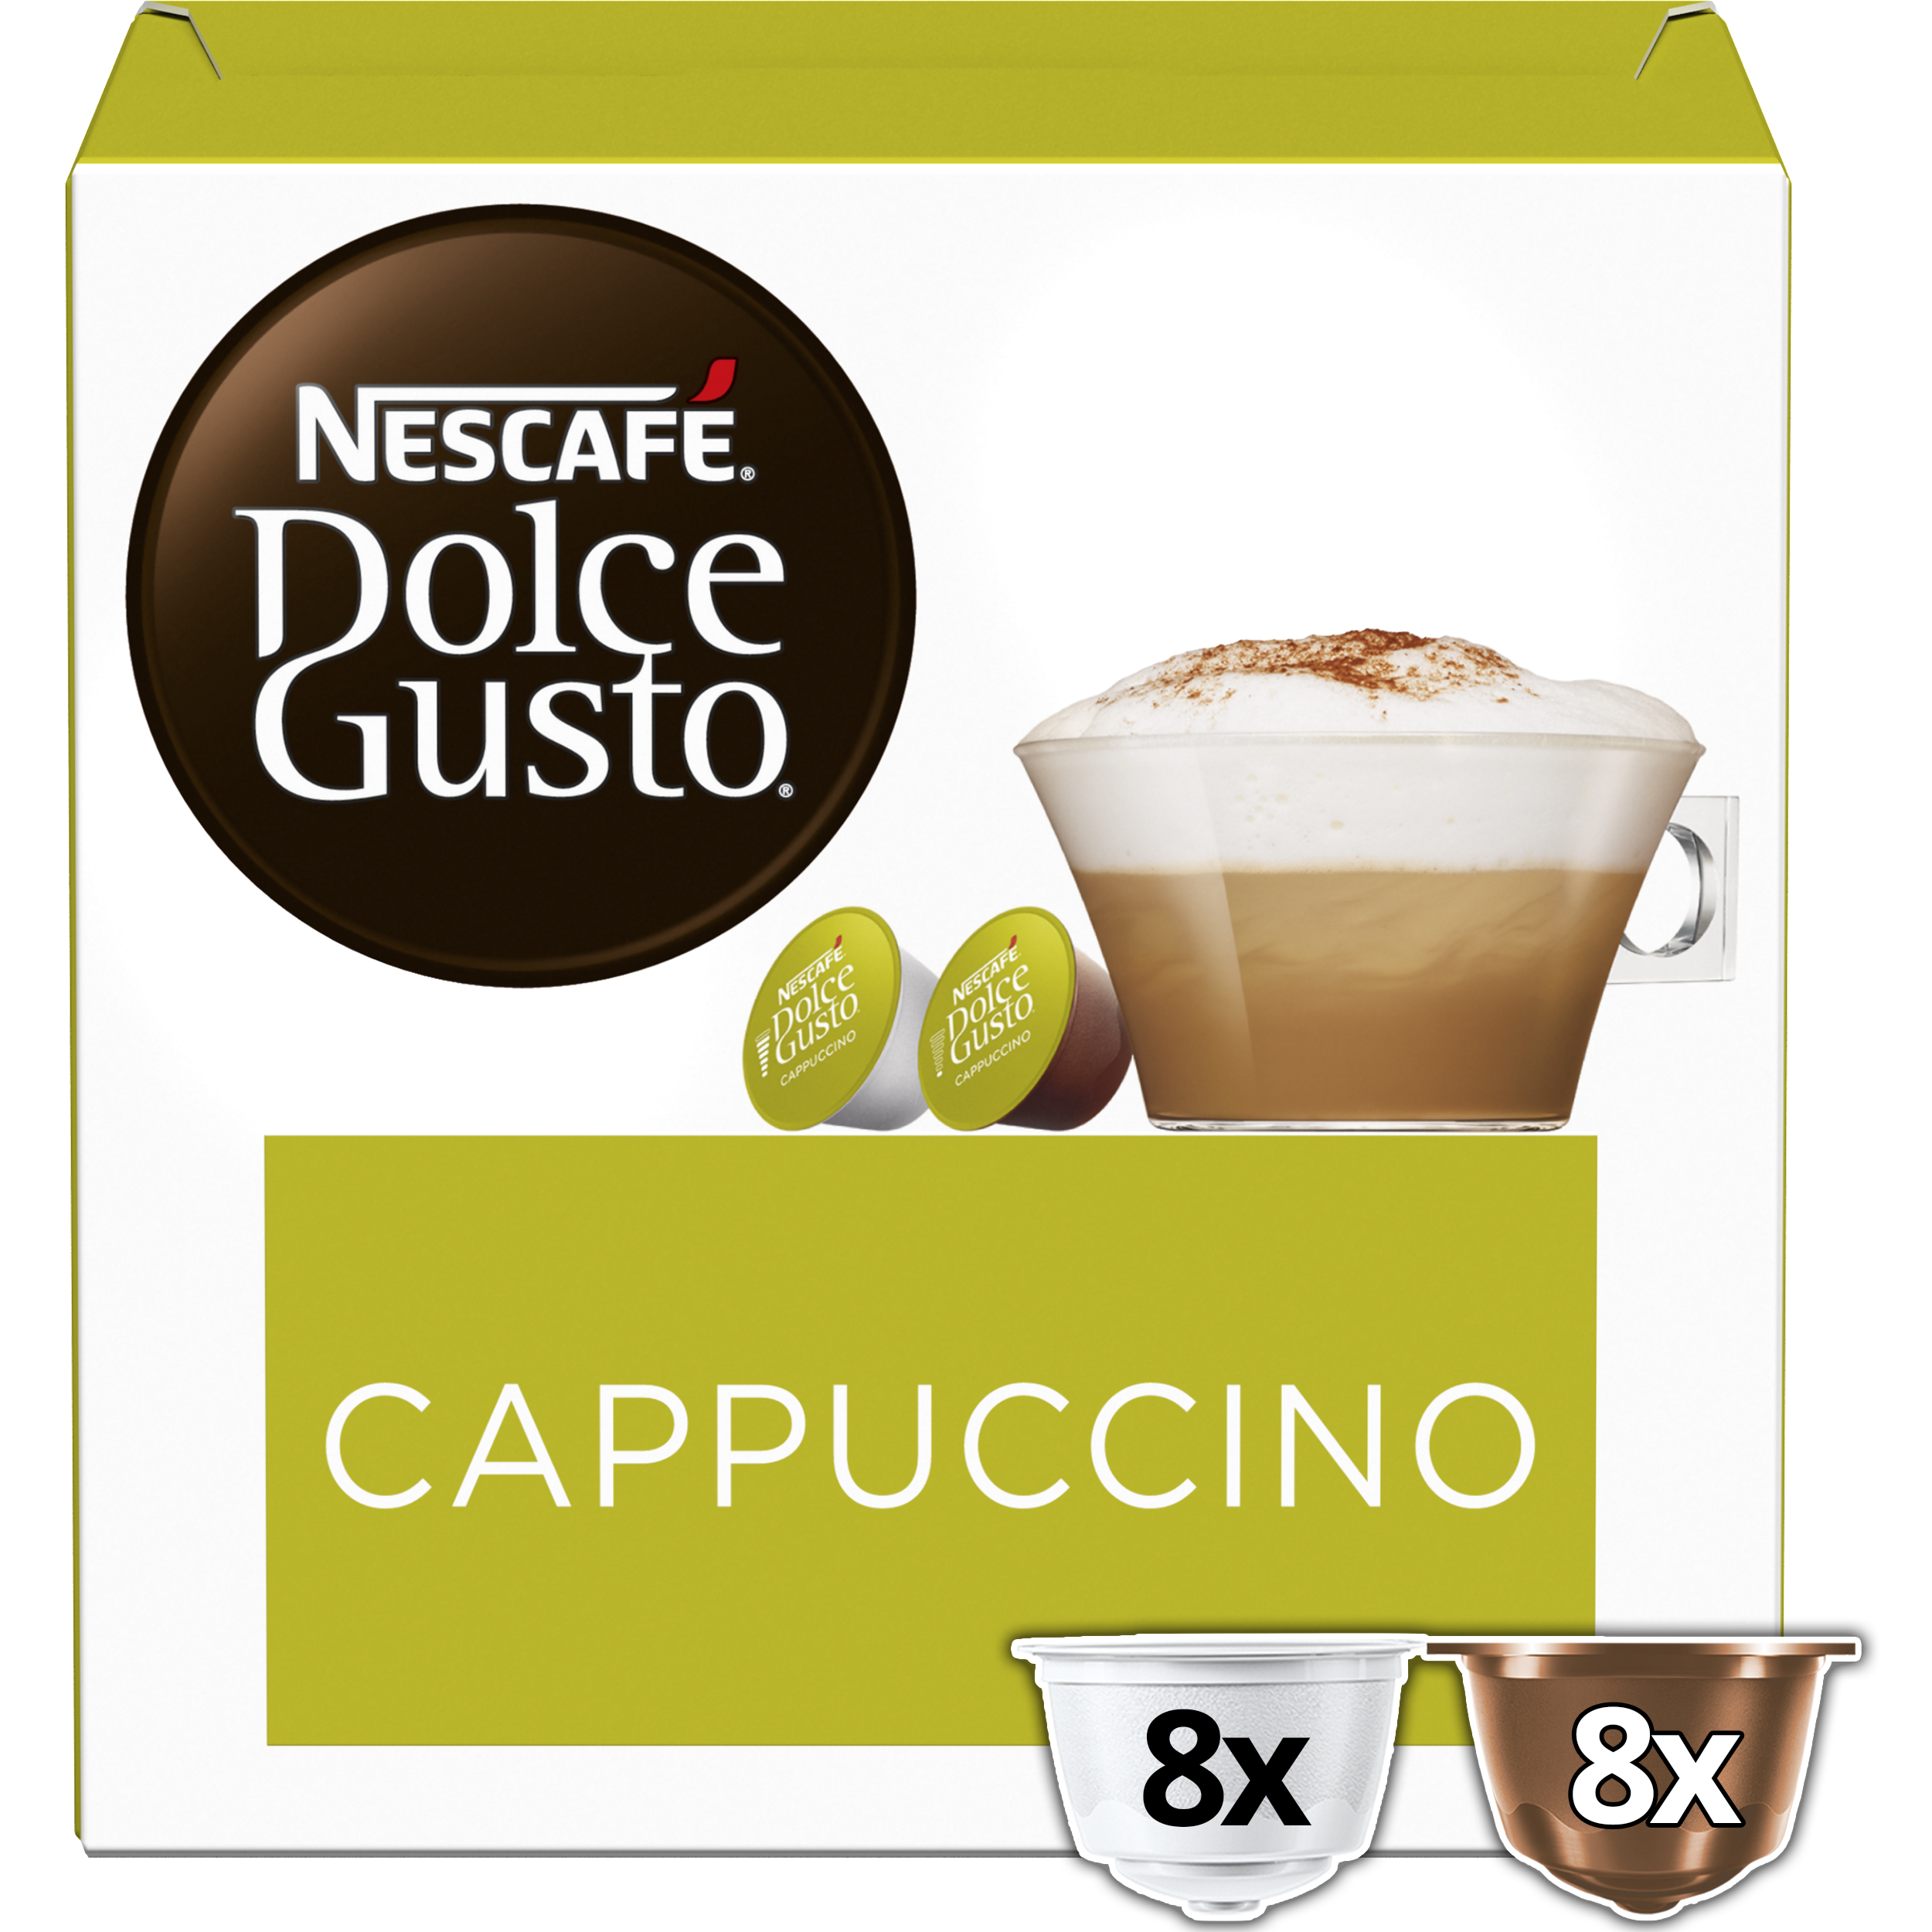 Cappuccino Dolce gusto: Cápsulas